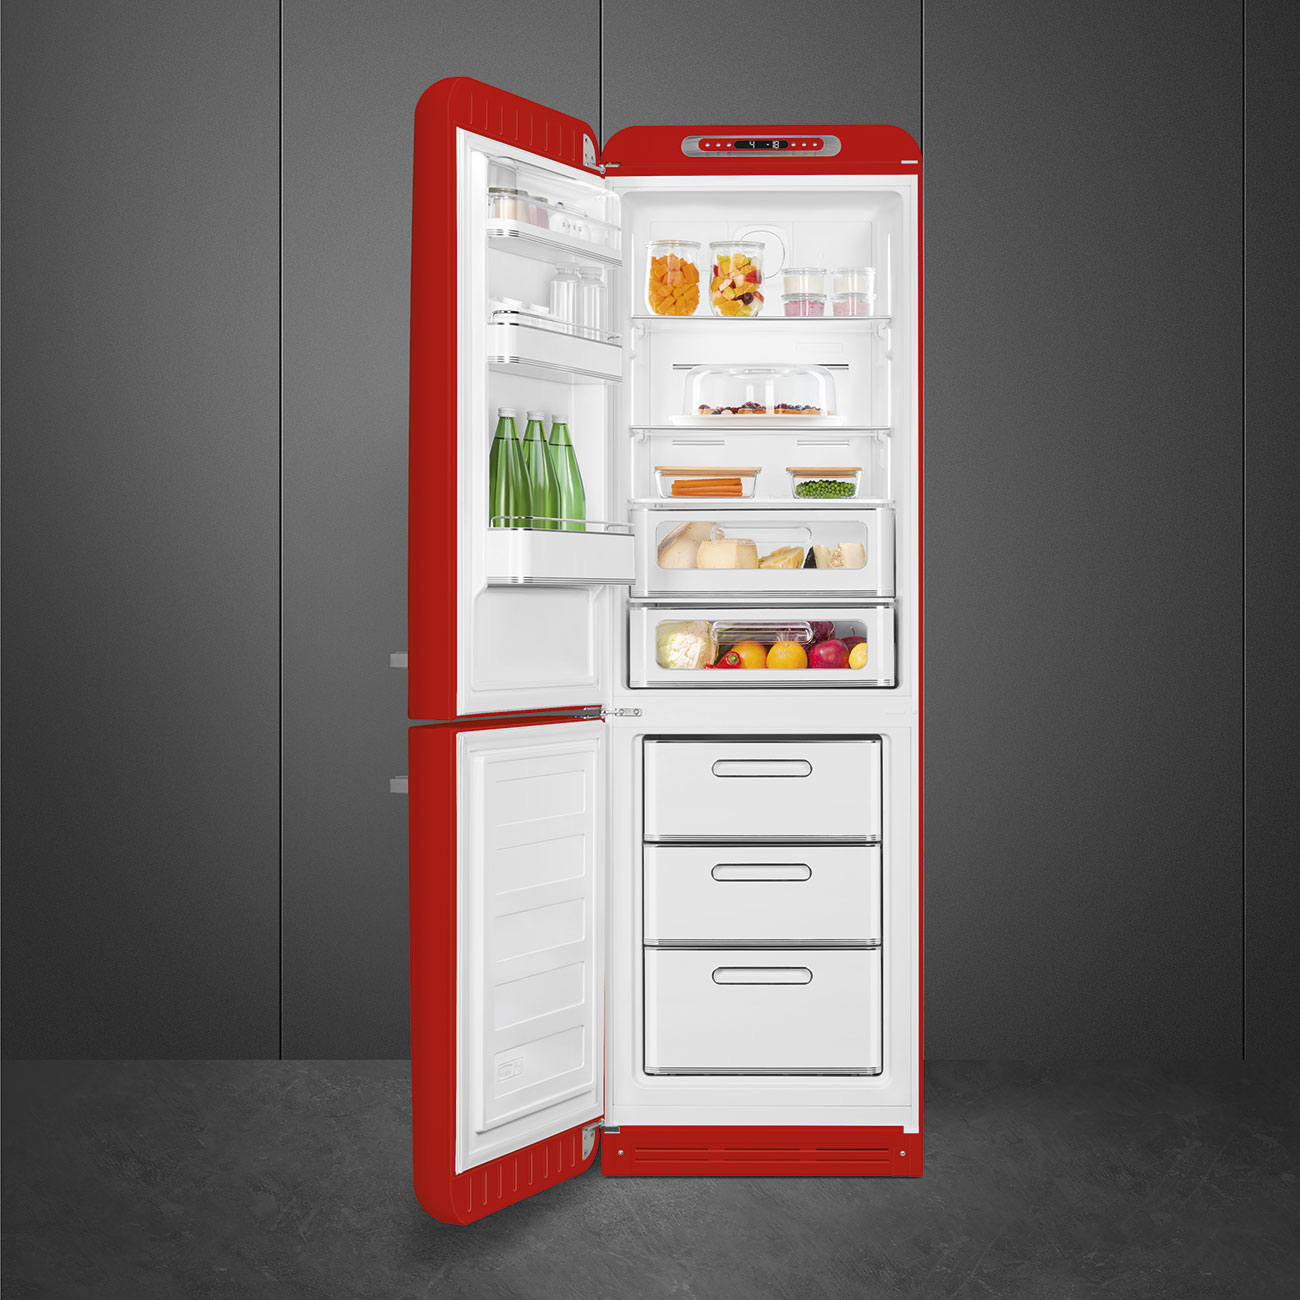 Rood koelkast - Smeg_3